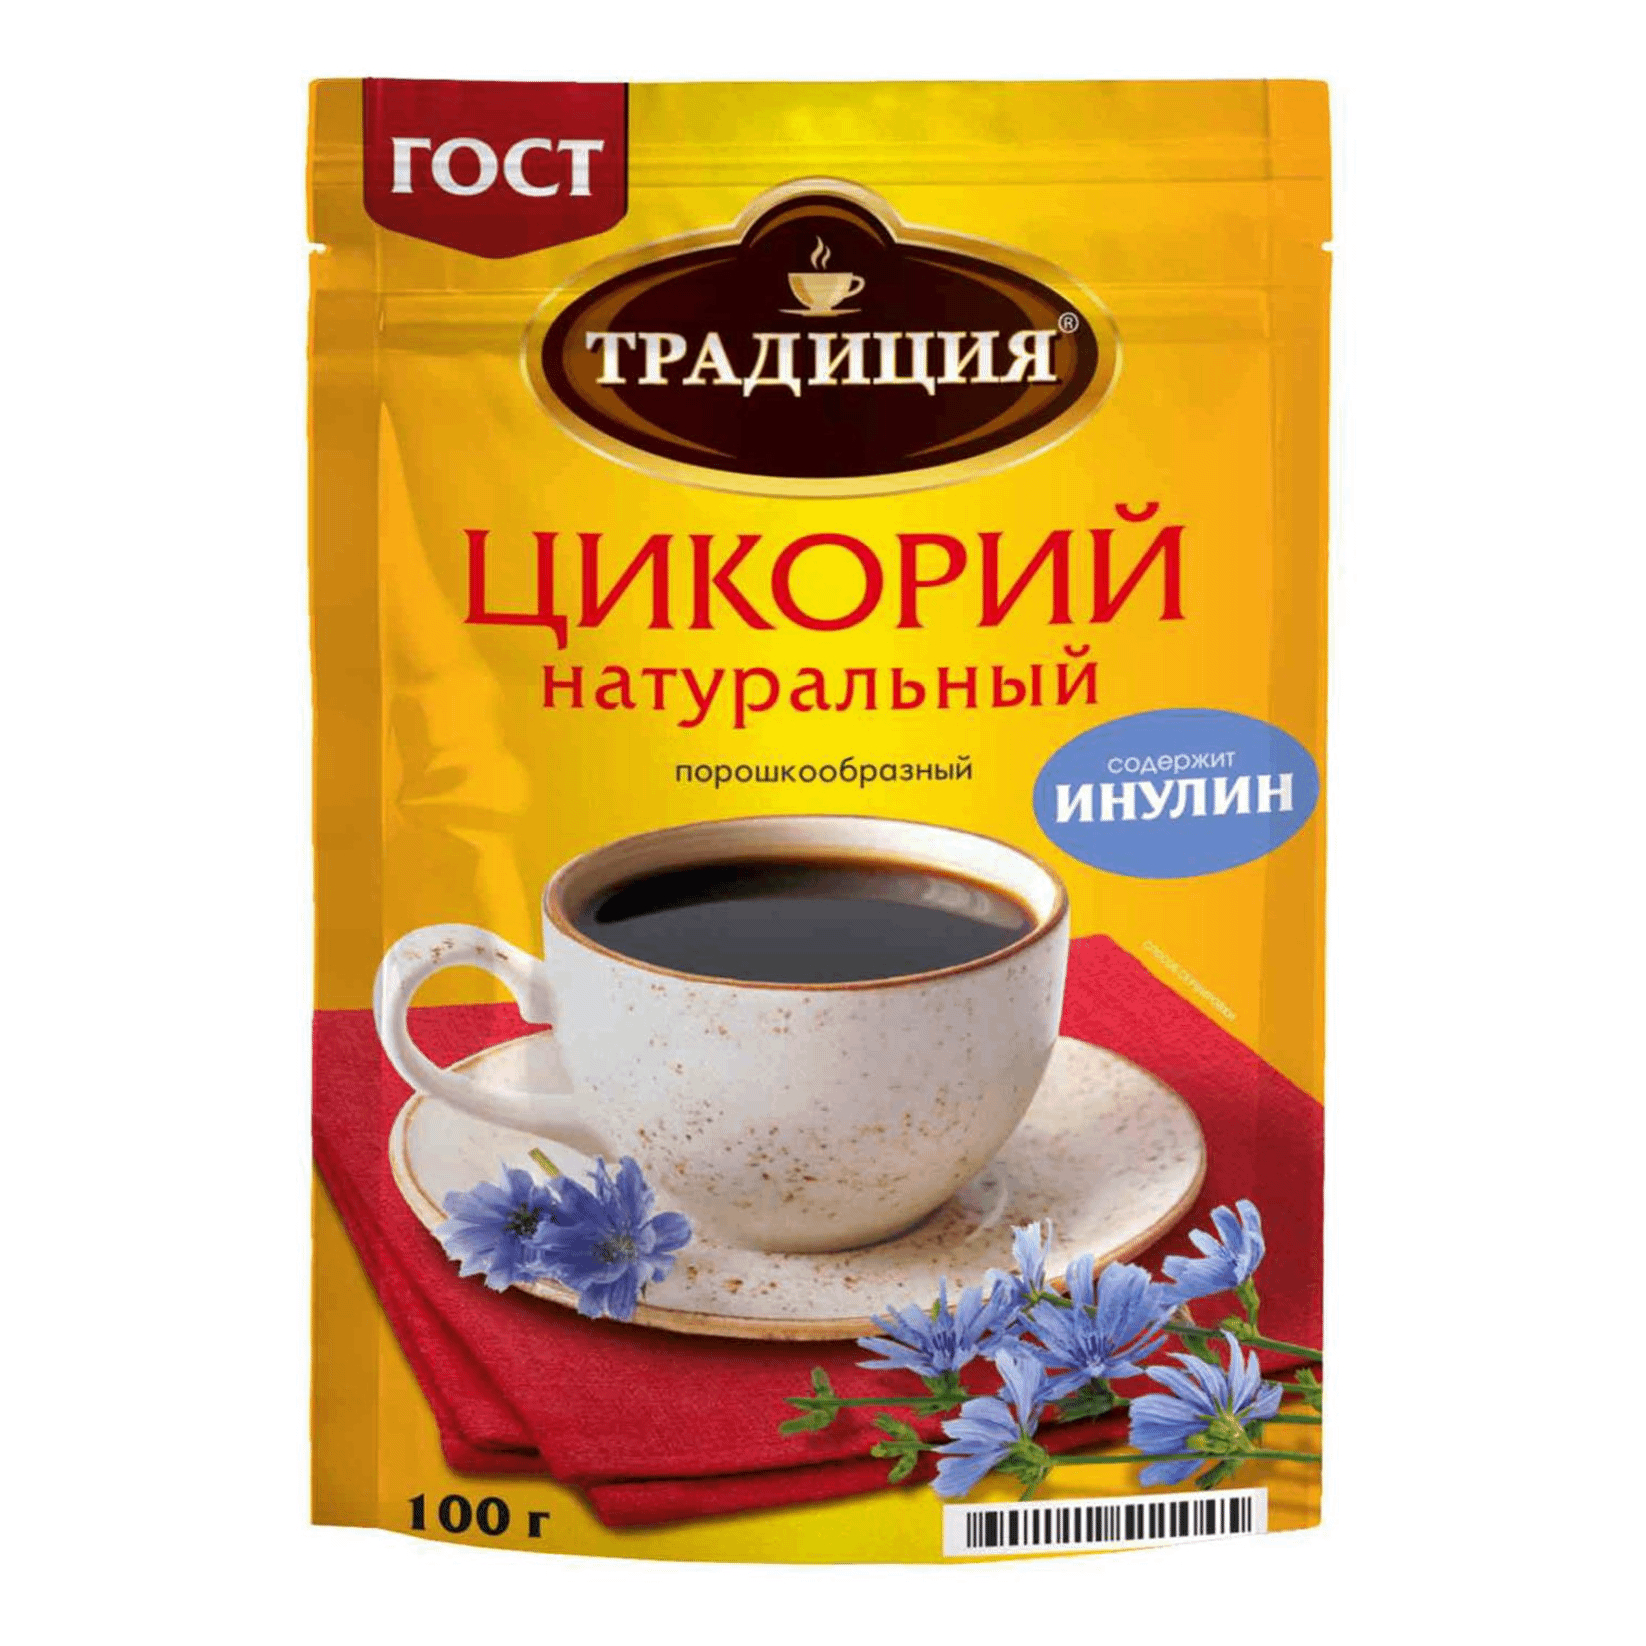 Цикорий Русский продукт Традиция натуральный 100 г цикорий москофе натуральный 100 г